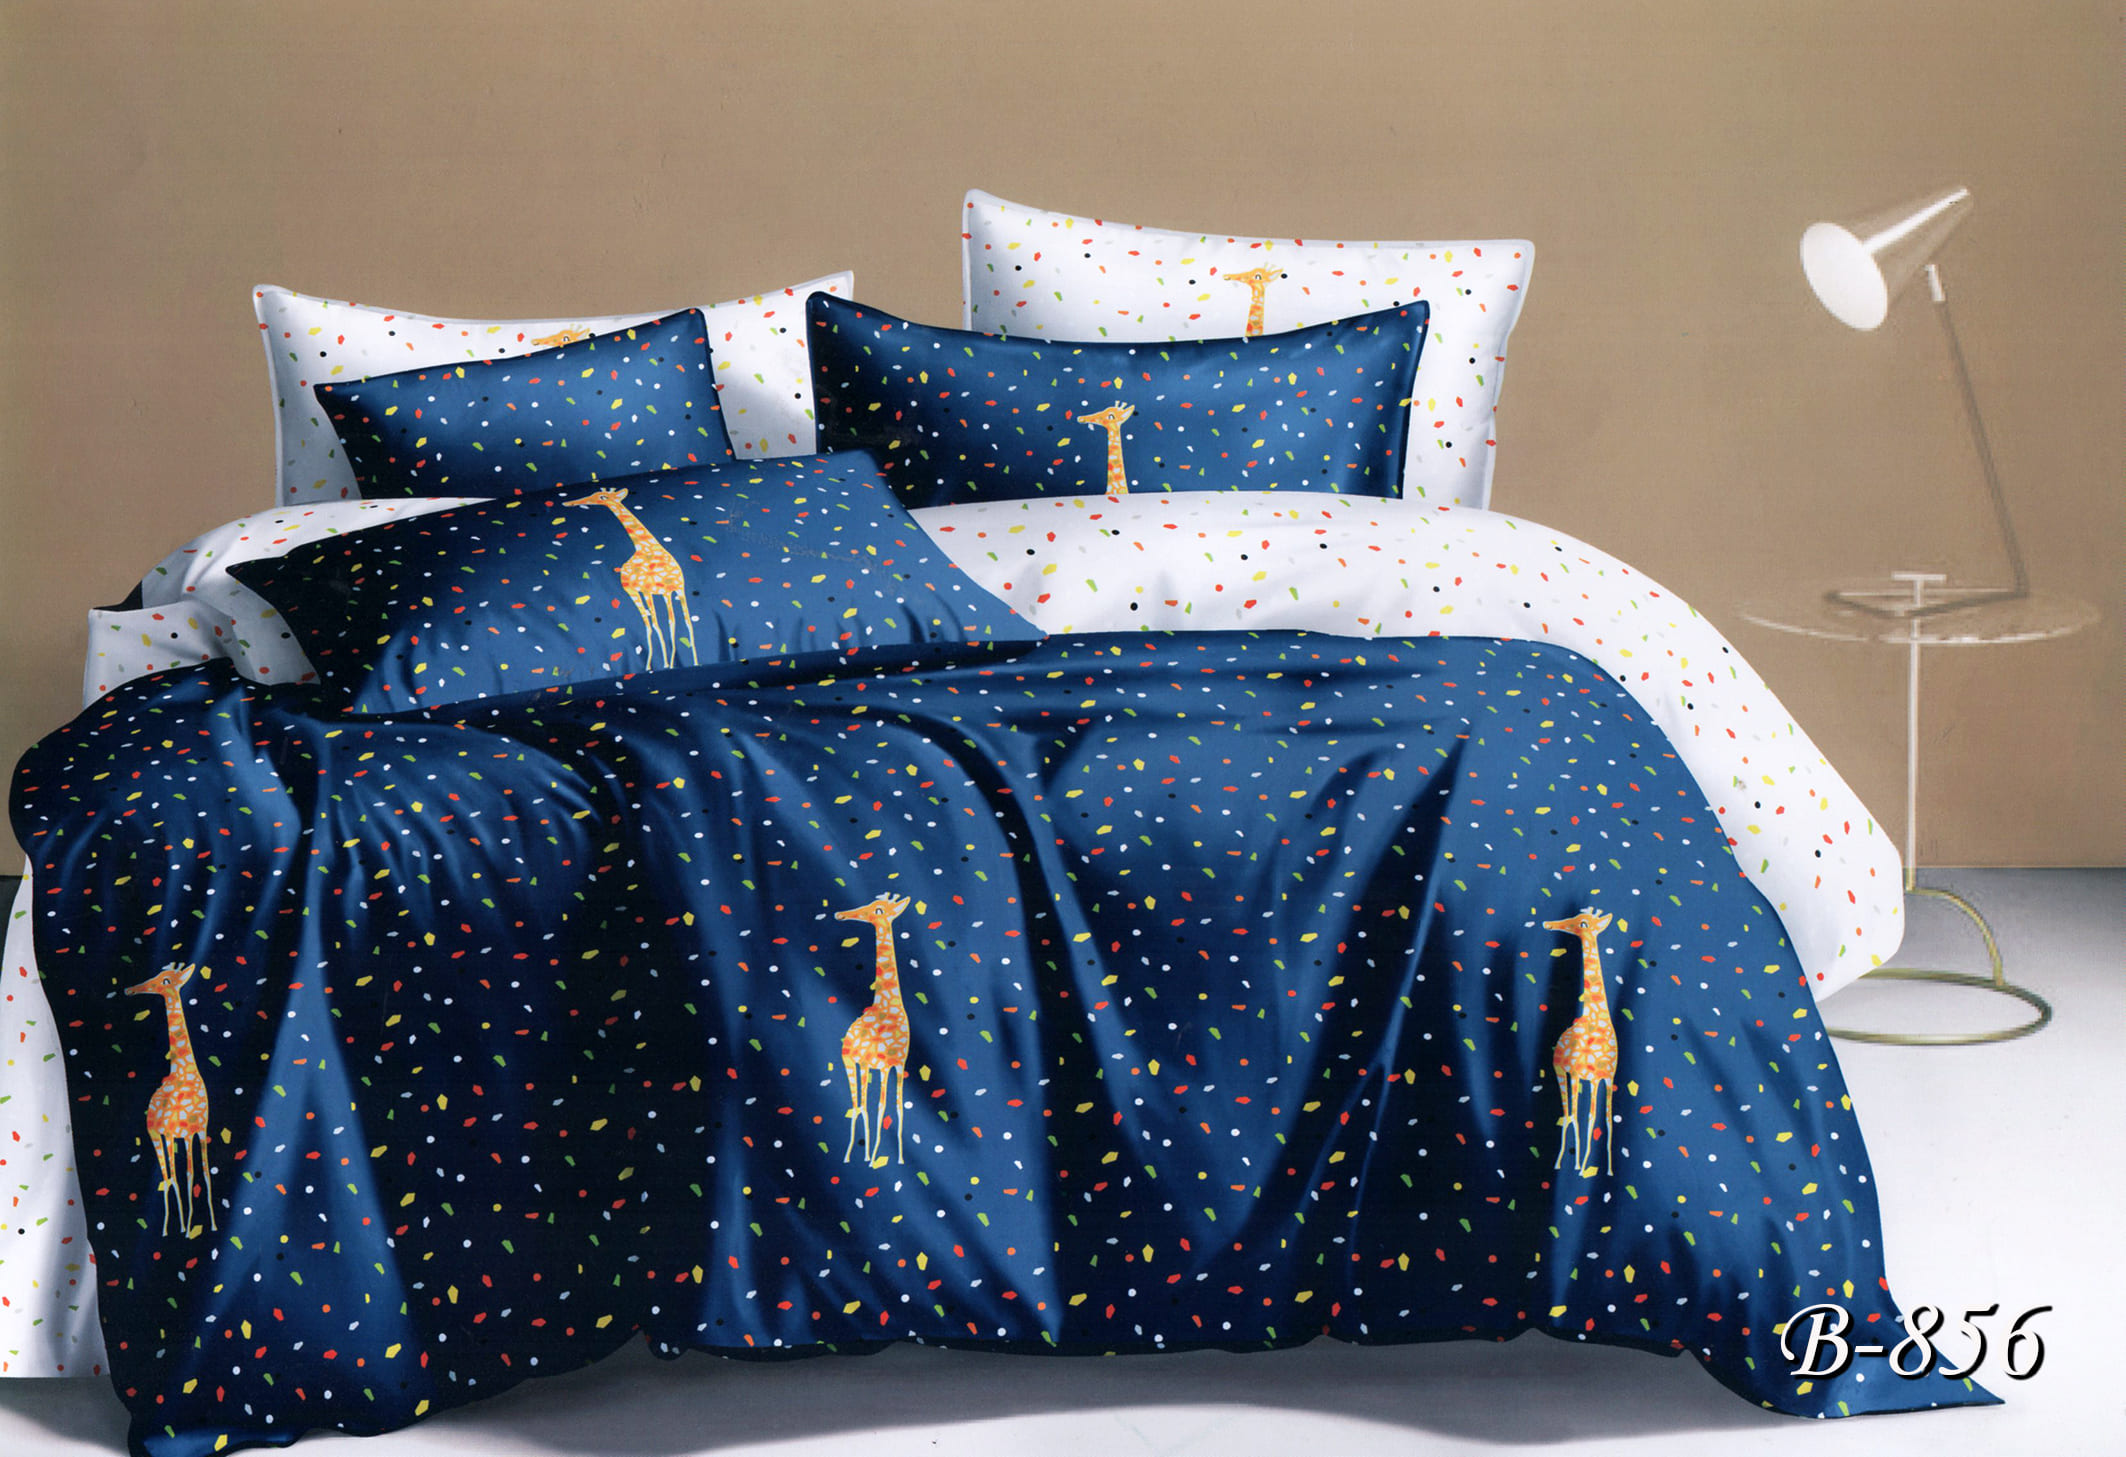 Двуспальное постельное белье Тет-А-Тет B-856 Жирафы 